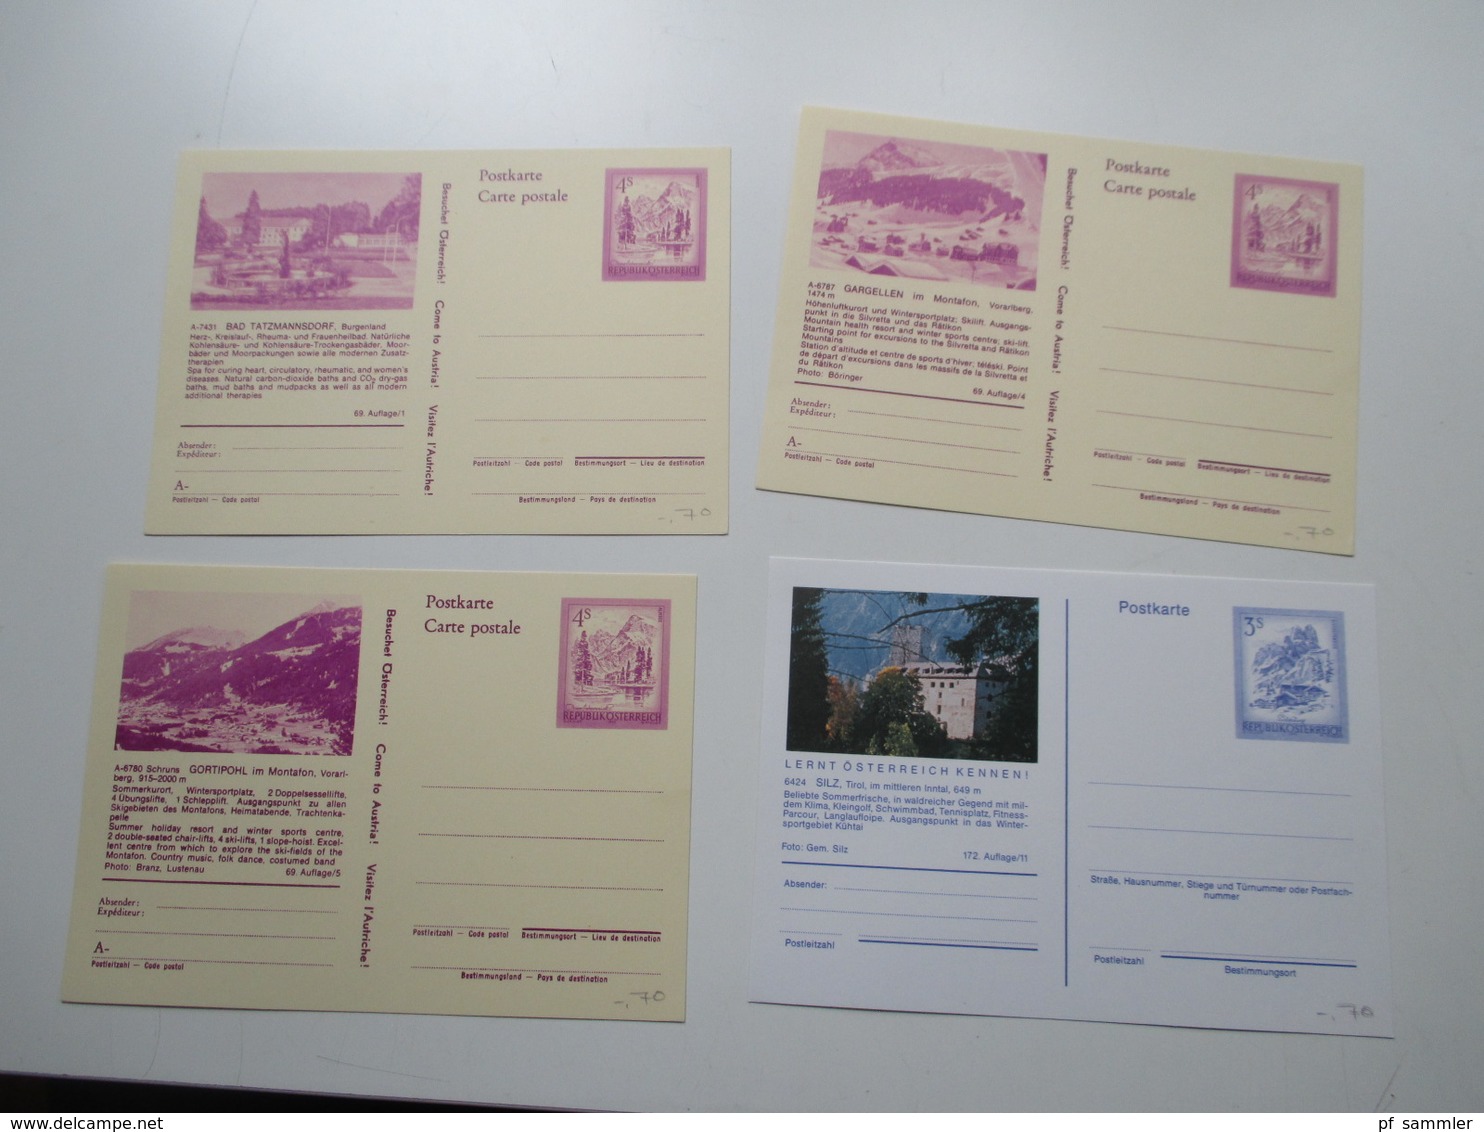 Österreich Posten GA Karten / Umschläge ca. 1900  - 2008 insgesamt 160 Stück ungebraucht / gelaufen. etwas Nominale!